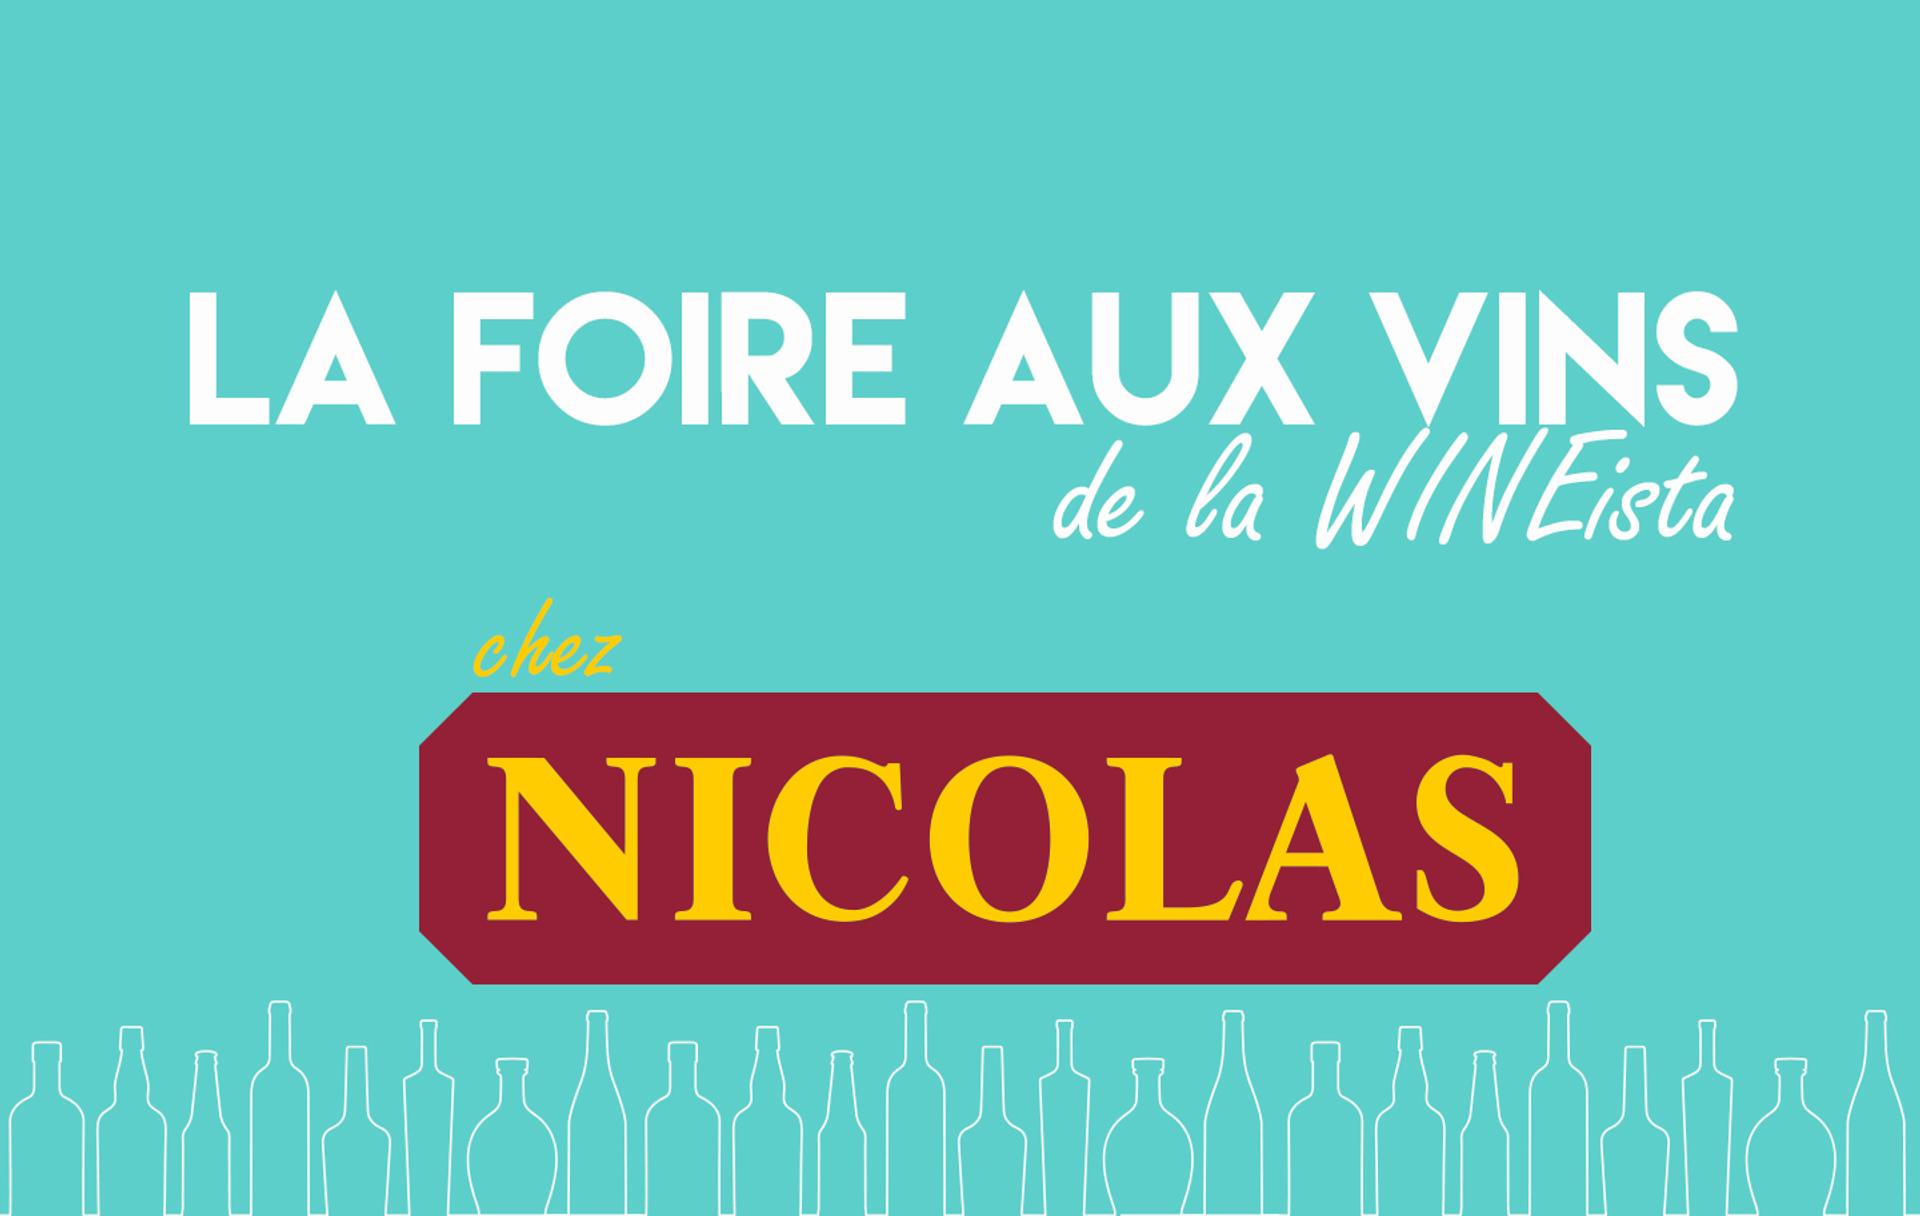 Foire aux vins Nicolas, les 3 coups de cœur de La WINEista